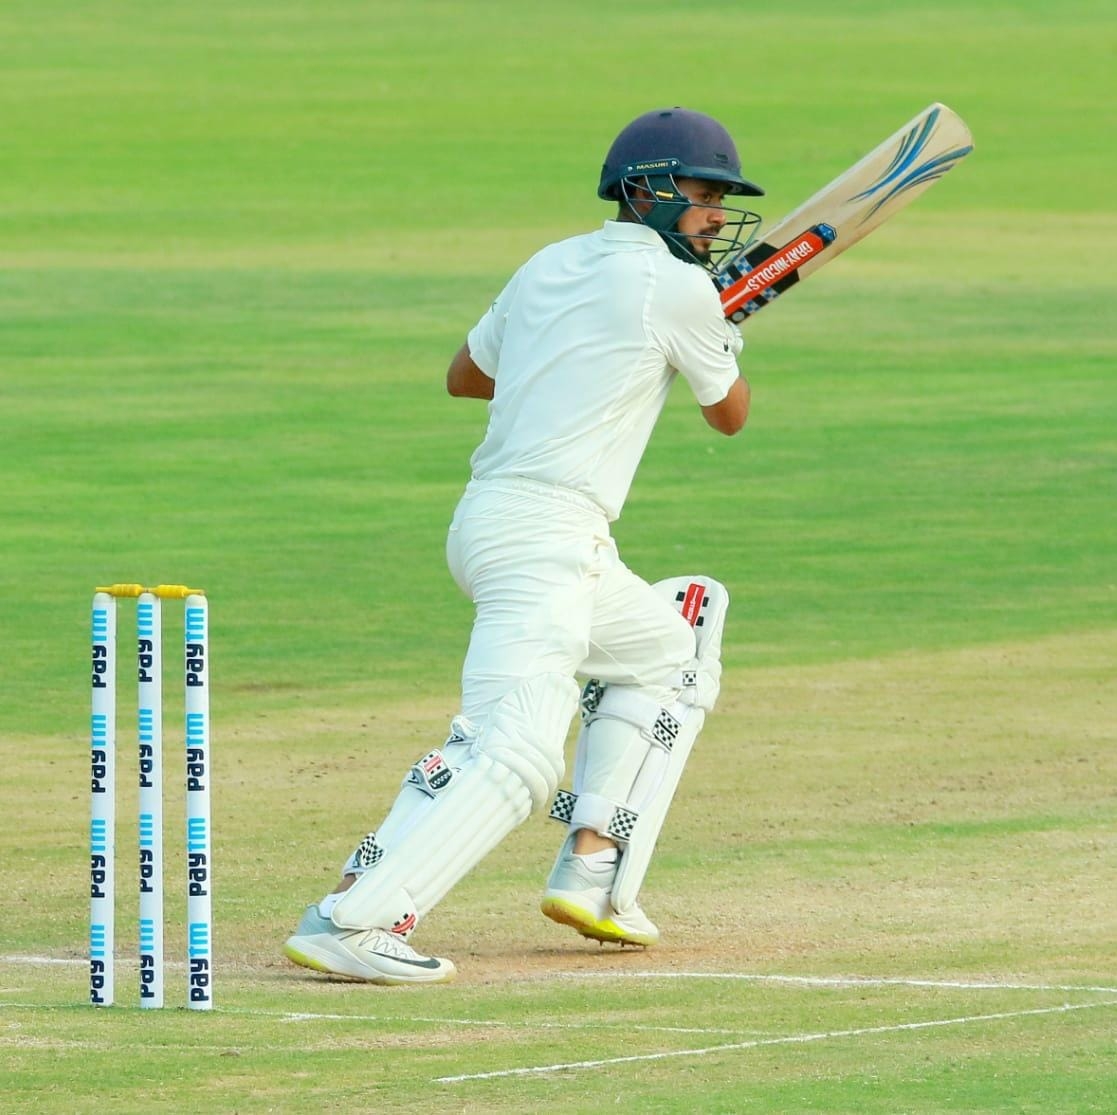 Priyank Panchal batting